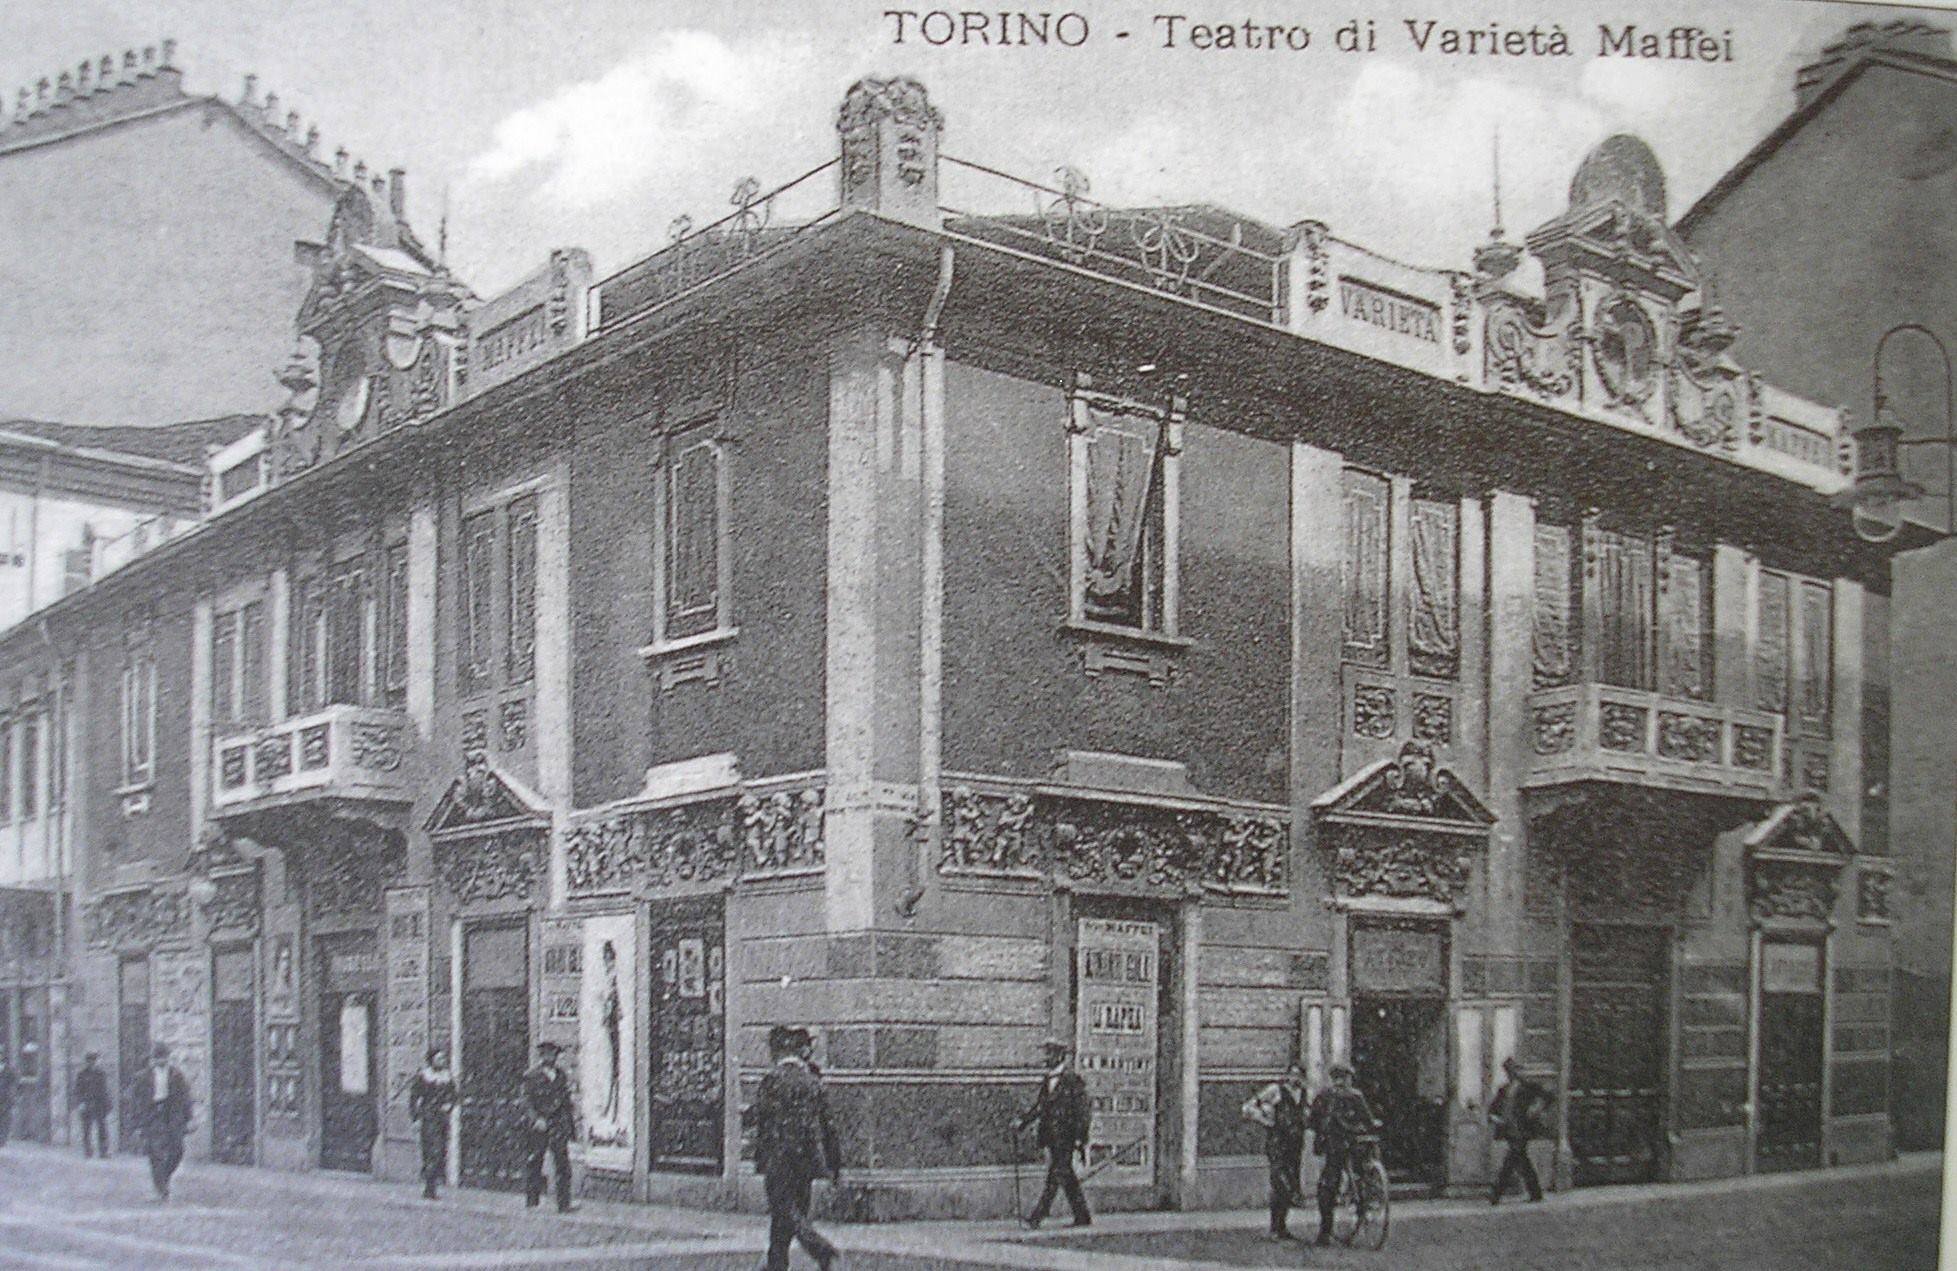 Cinecafè Teatro Maffei @ Borgo San Salvario